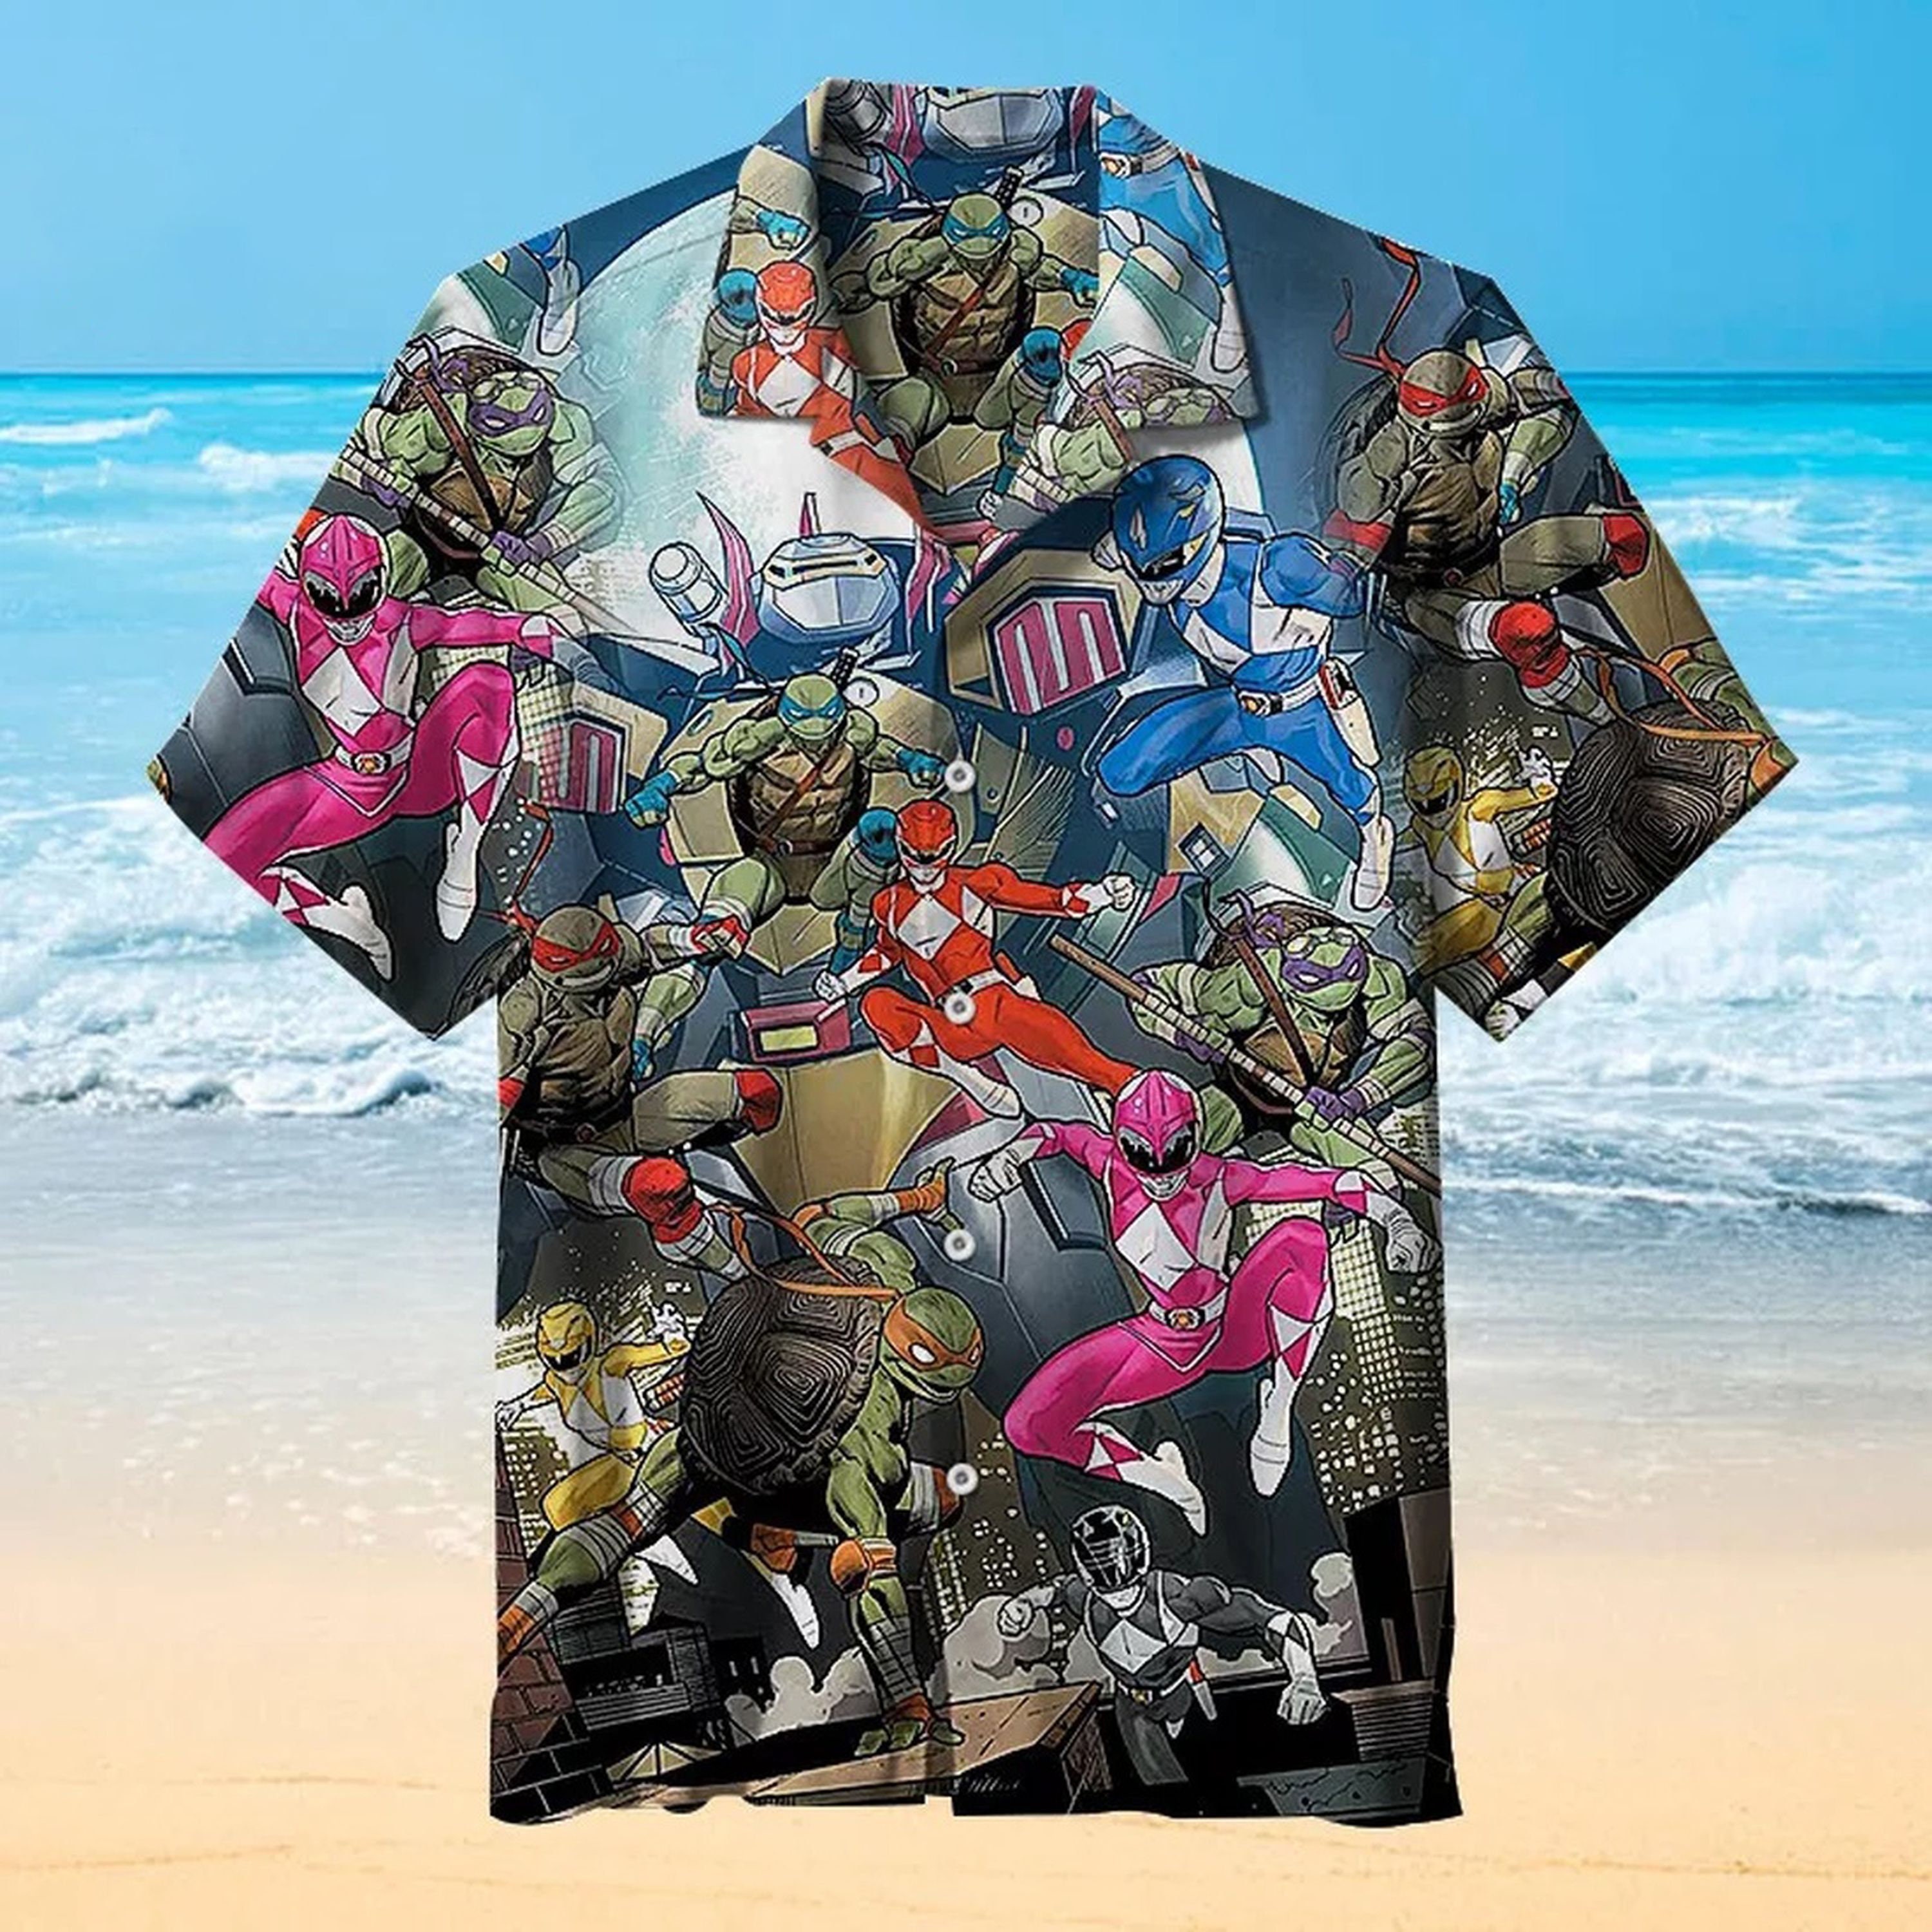 The Science Ninja Turtlee Vintage Summer Hawaiian Shirt